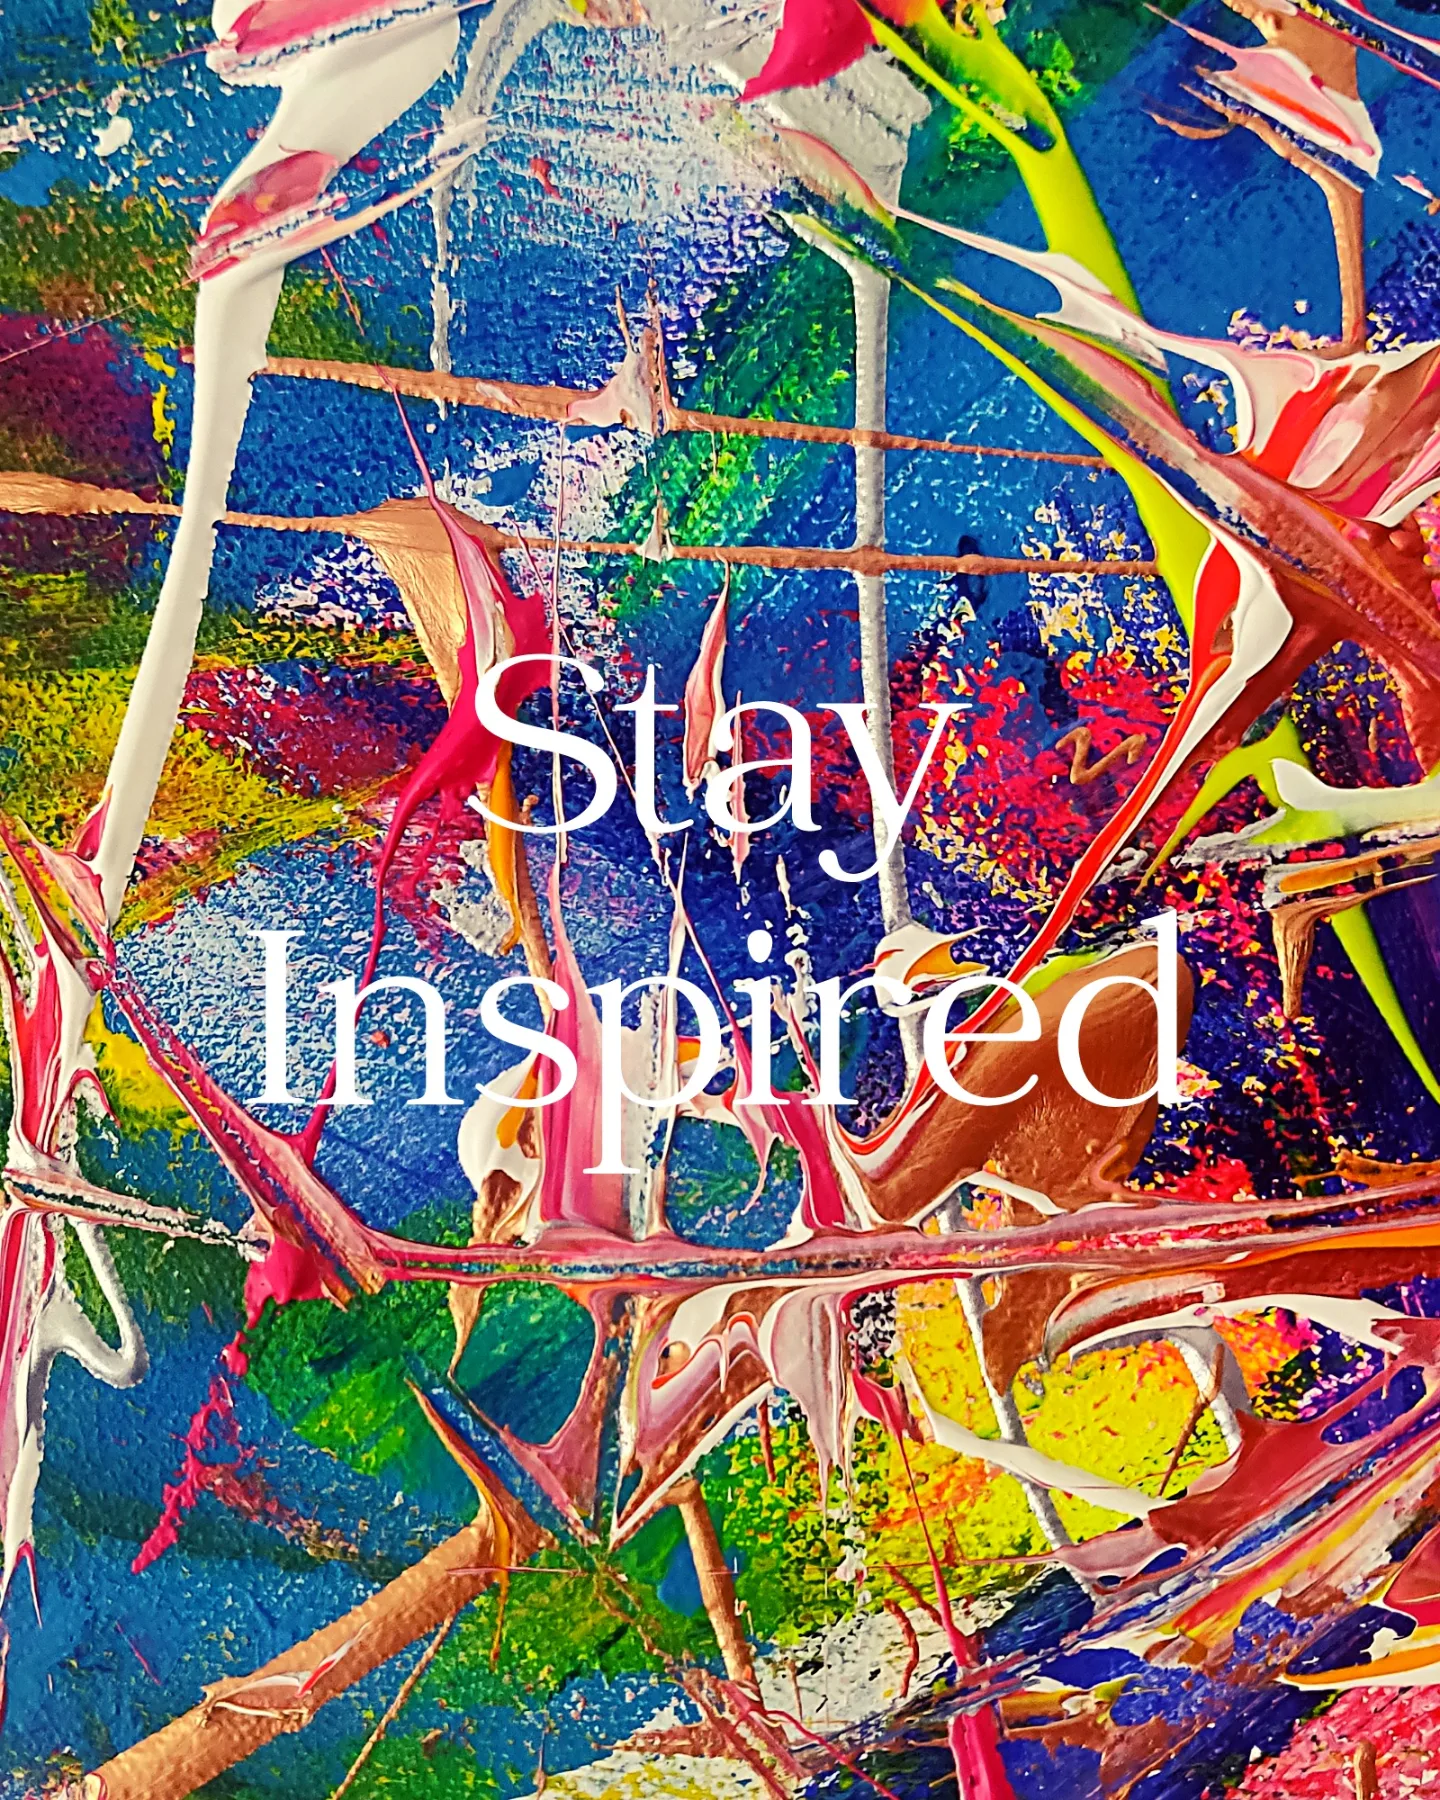 Get inspired -by olivier de Kerten